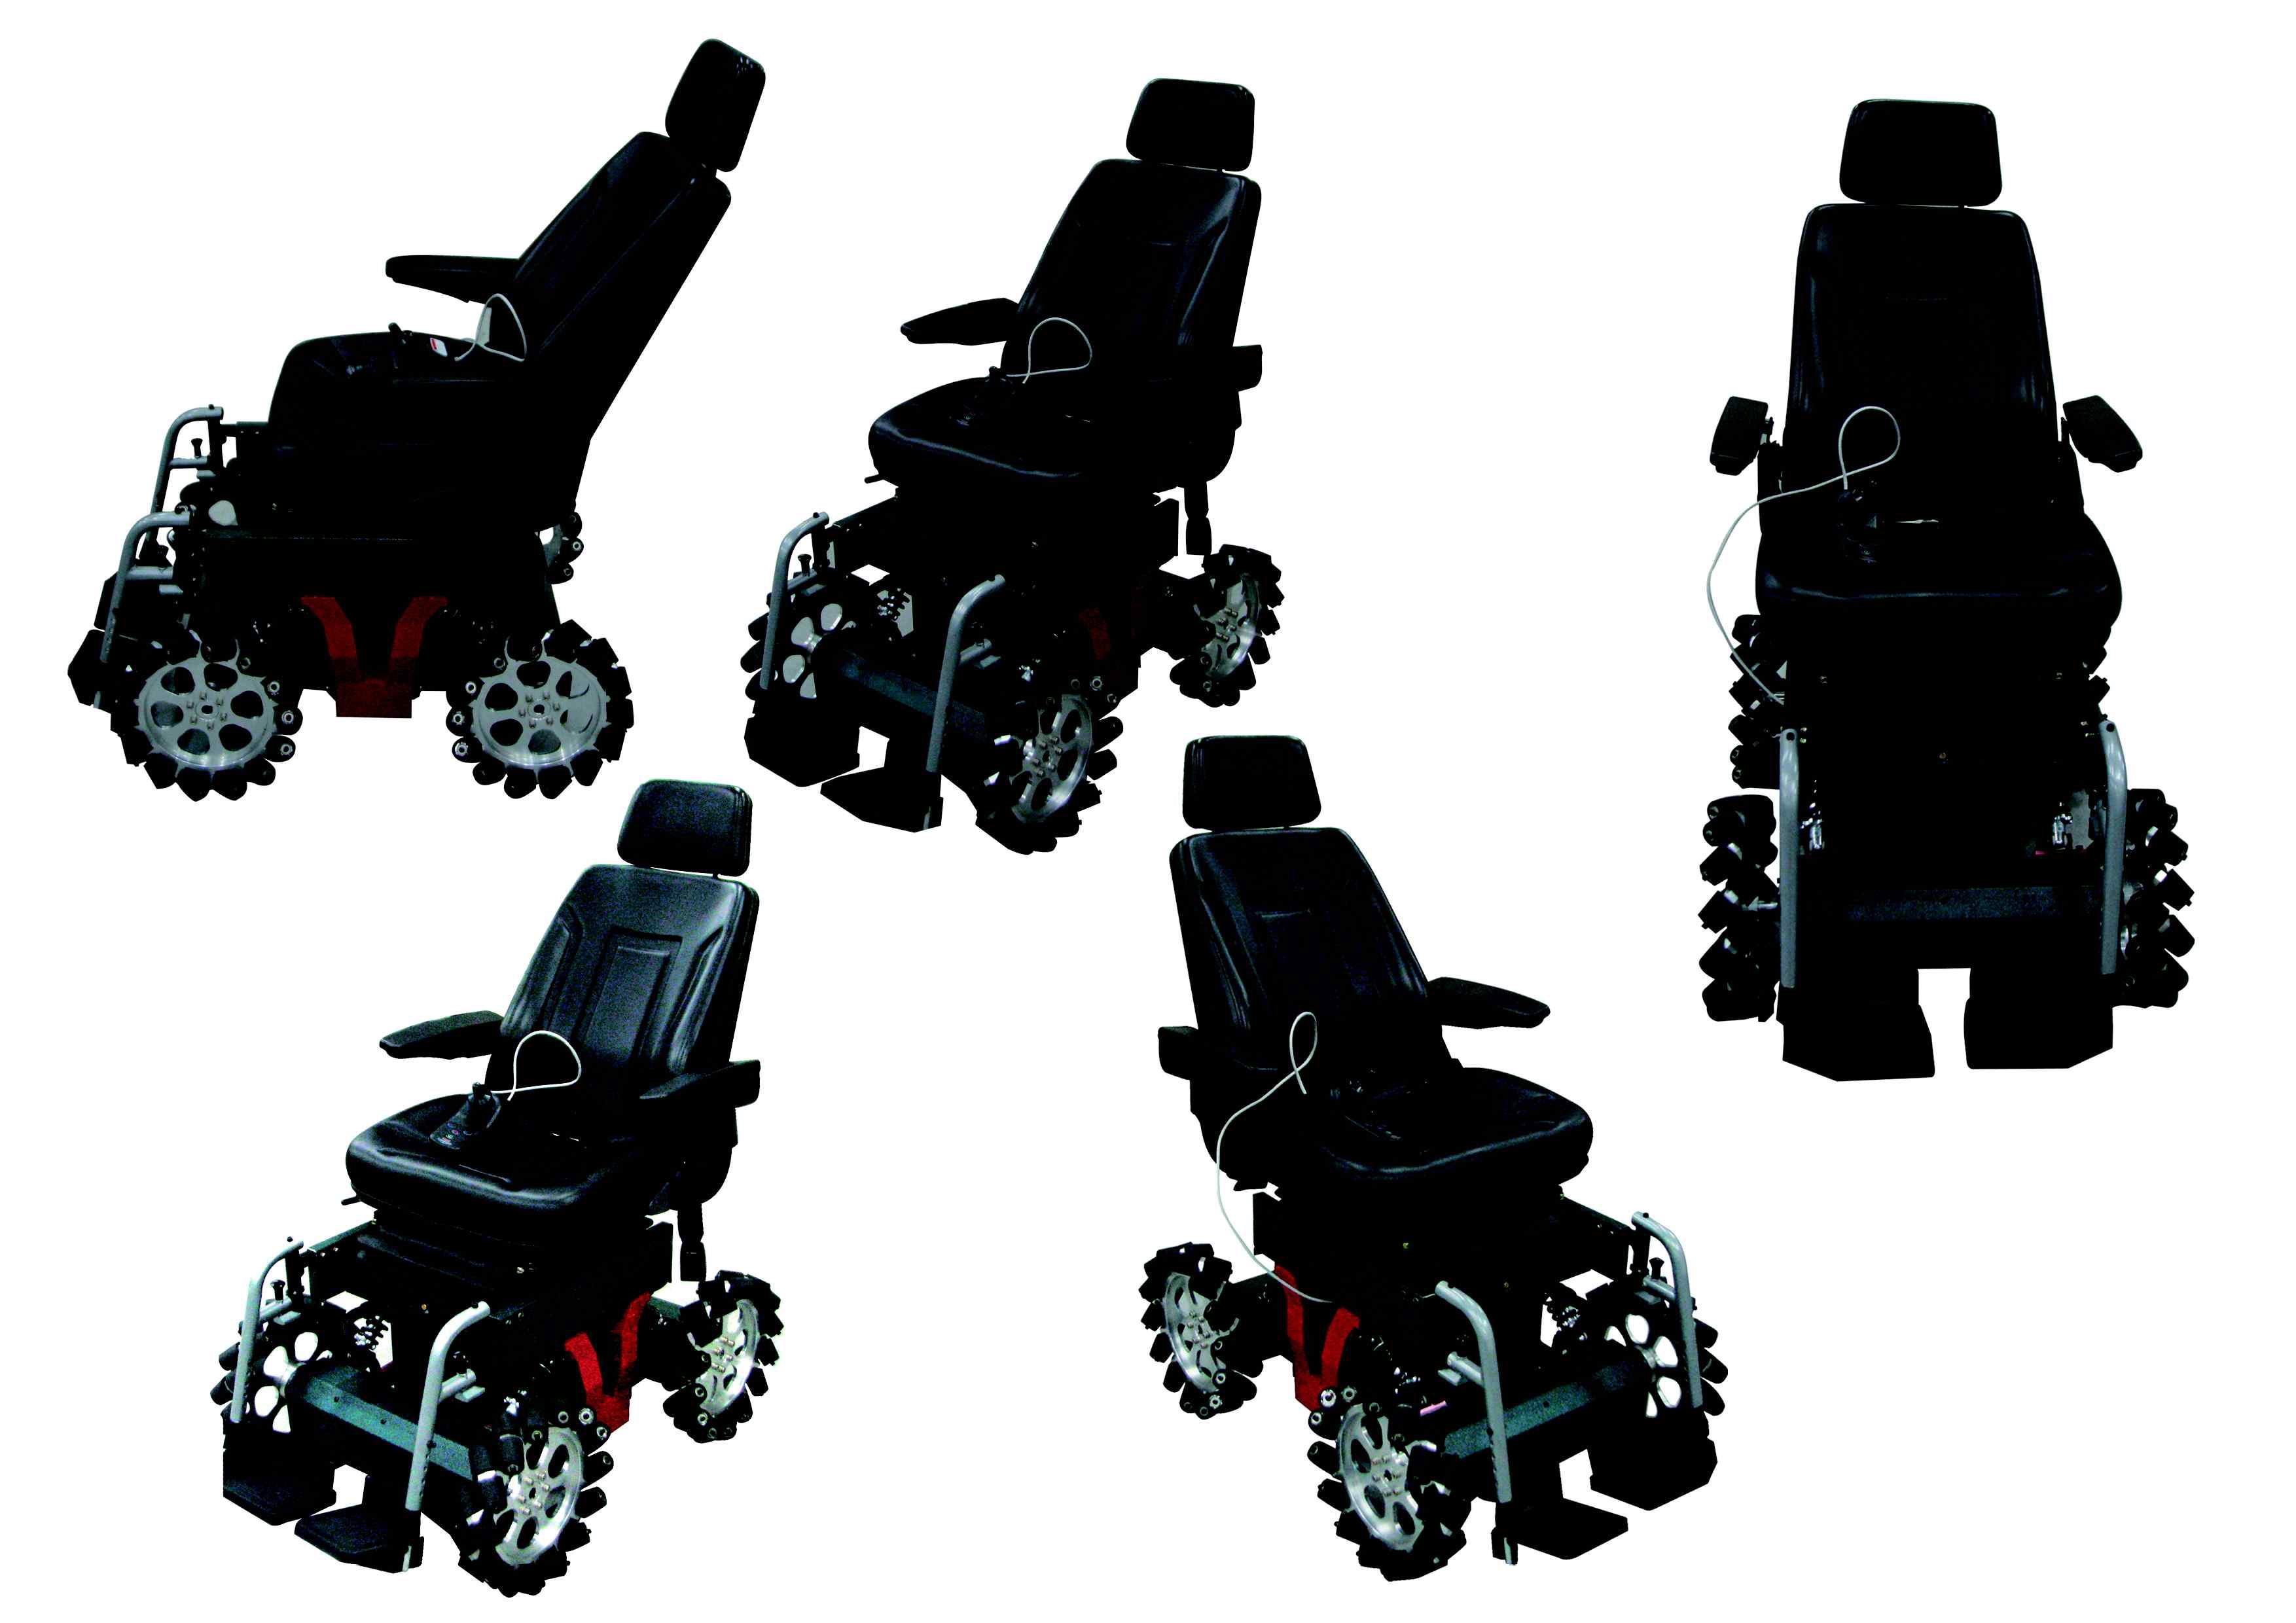 최종 개발 완료된 메카넘 휠을 이용한 휠체어